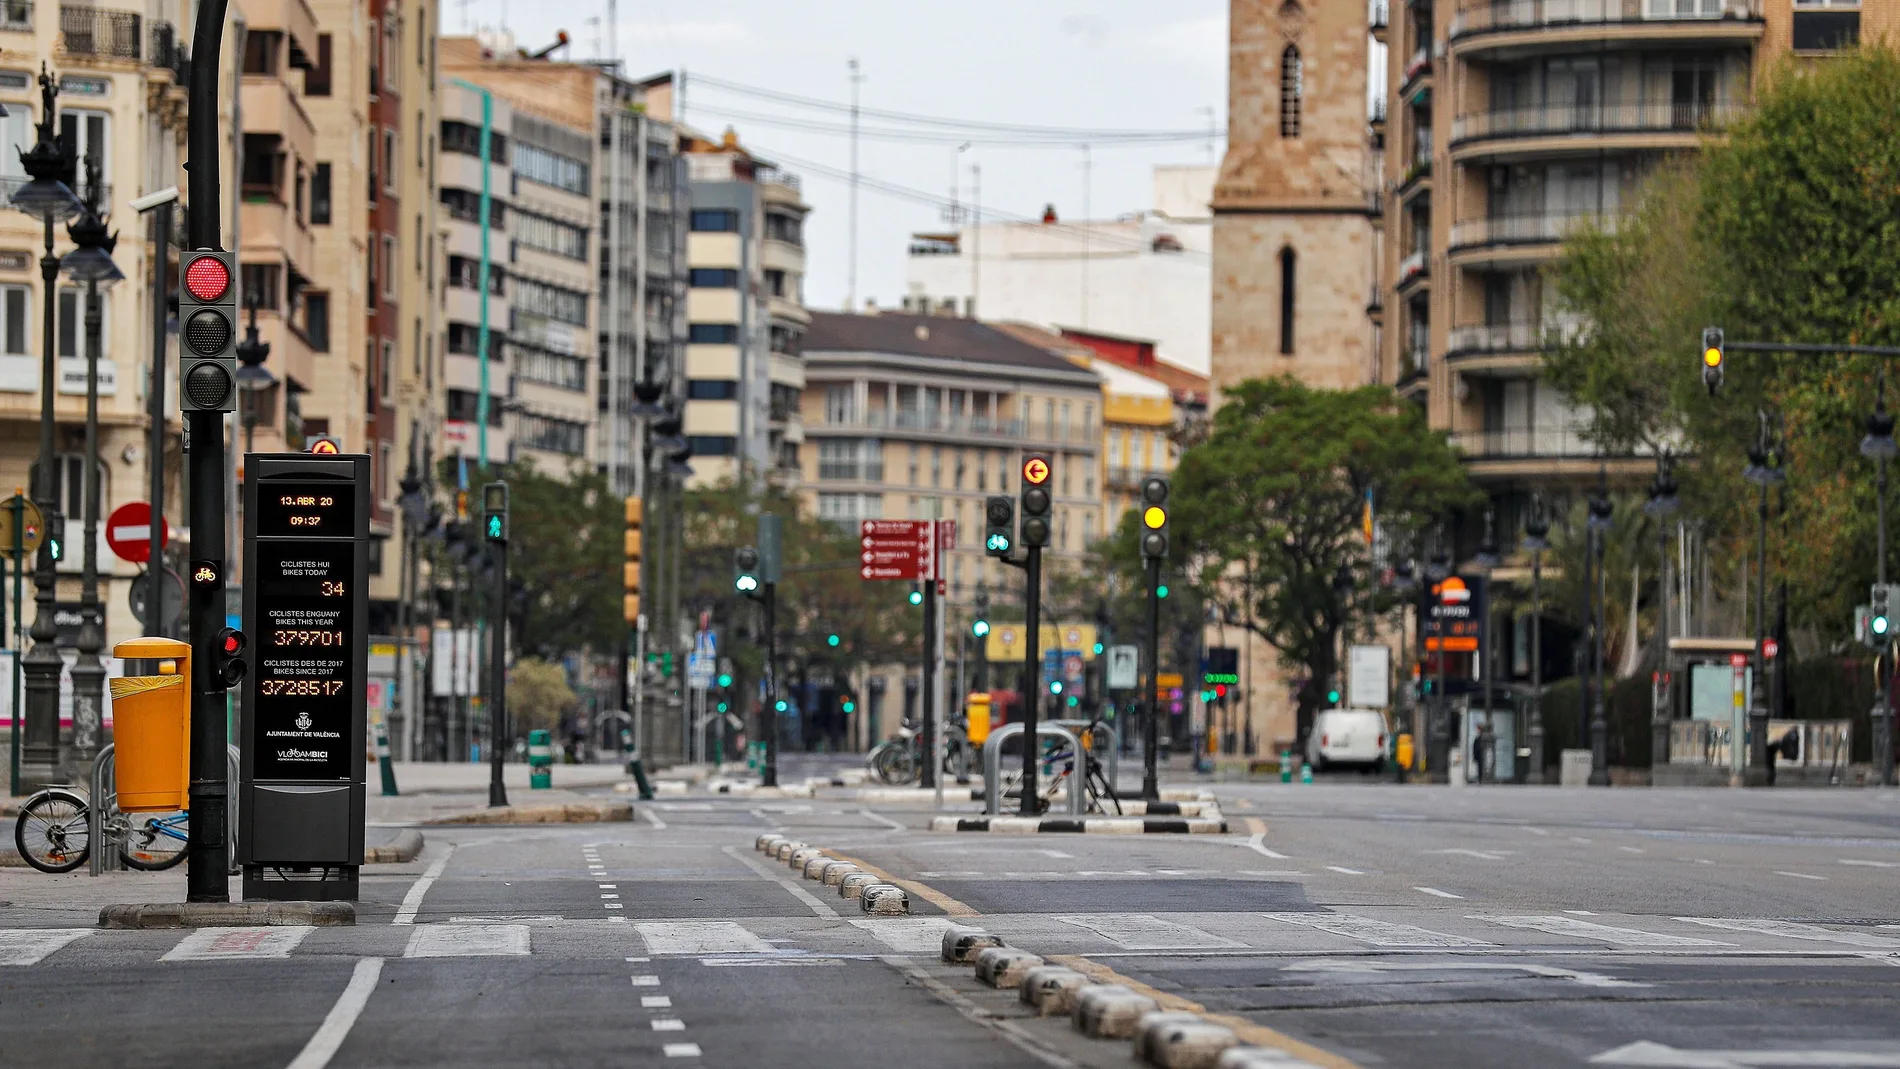 Muchas oficinas del centro de Valencia están cerradas y las que quedan en sus ubicaciones están negociando a la baja los precios con los propietarios en porcentajes que oscilan entre el 25 y el 30 por ciento